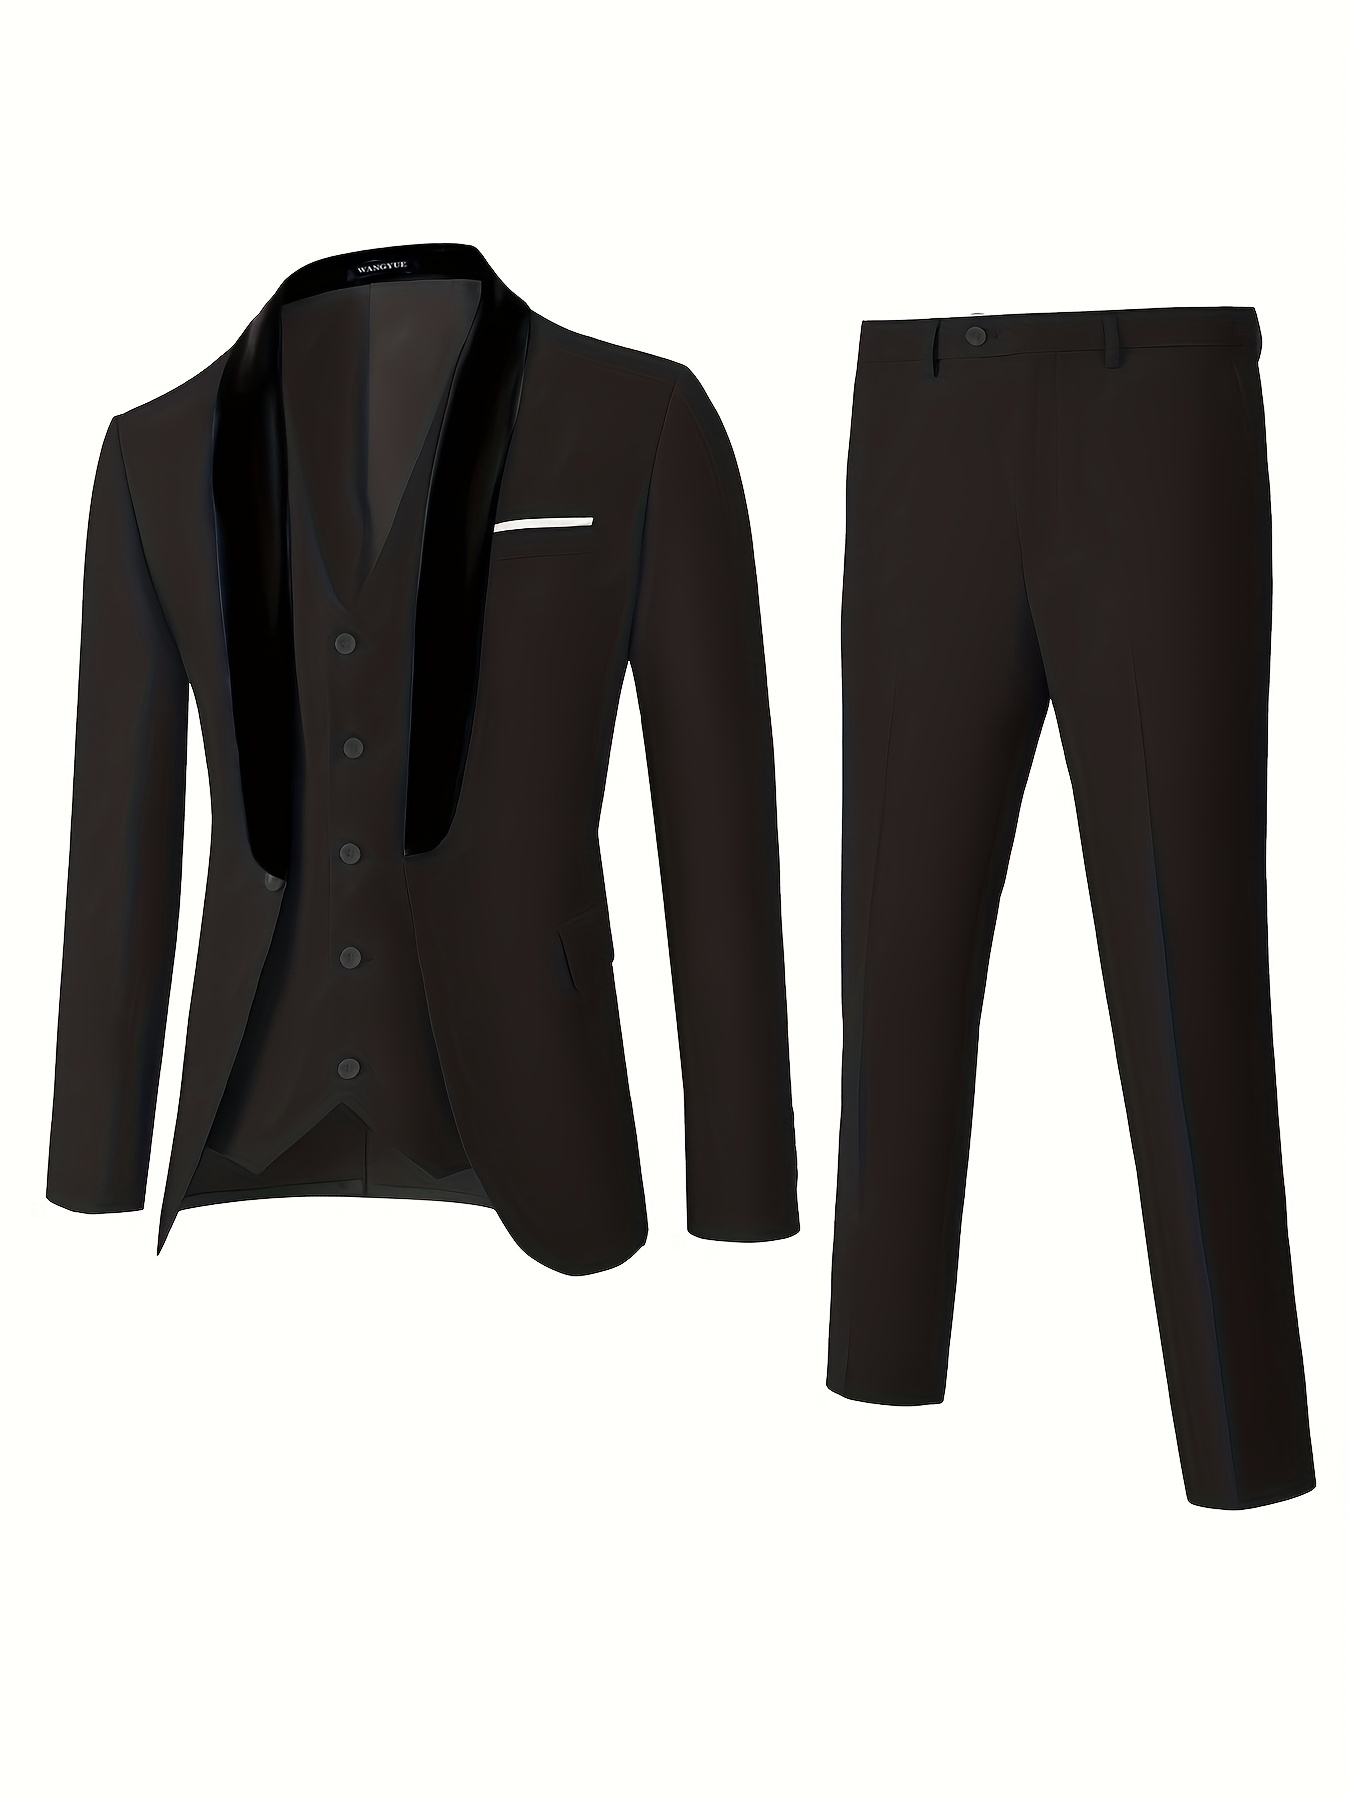 Men's Slim Fit Formal Dress Suit 3PCS Jacket+Pants+Vest Wedding